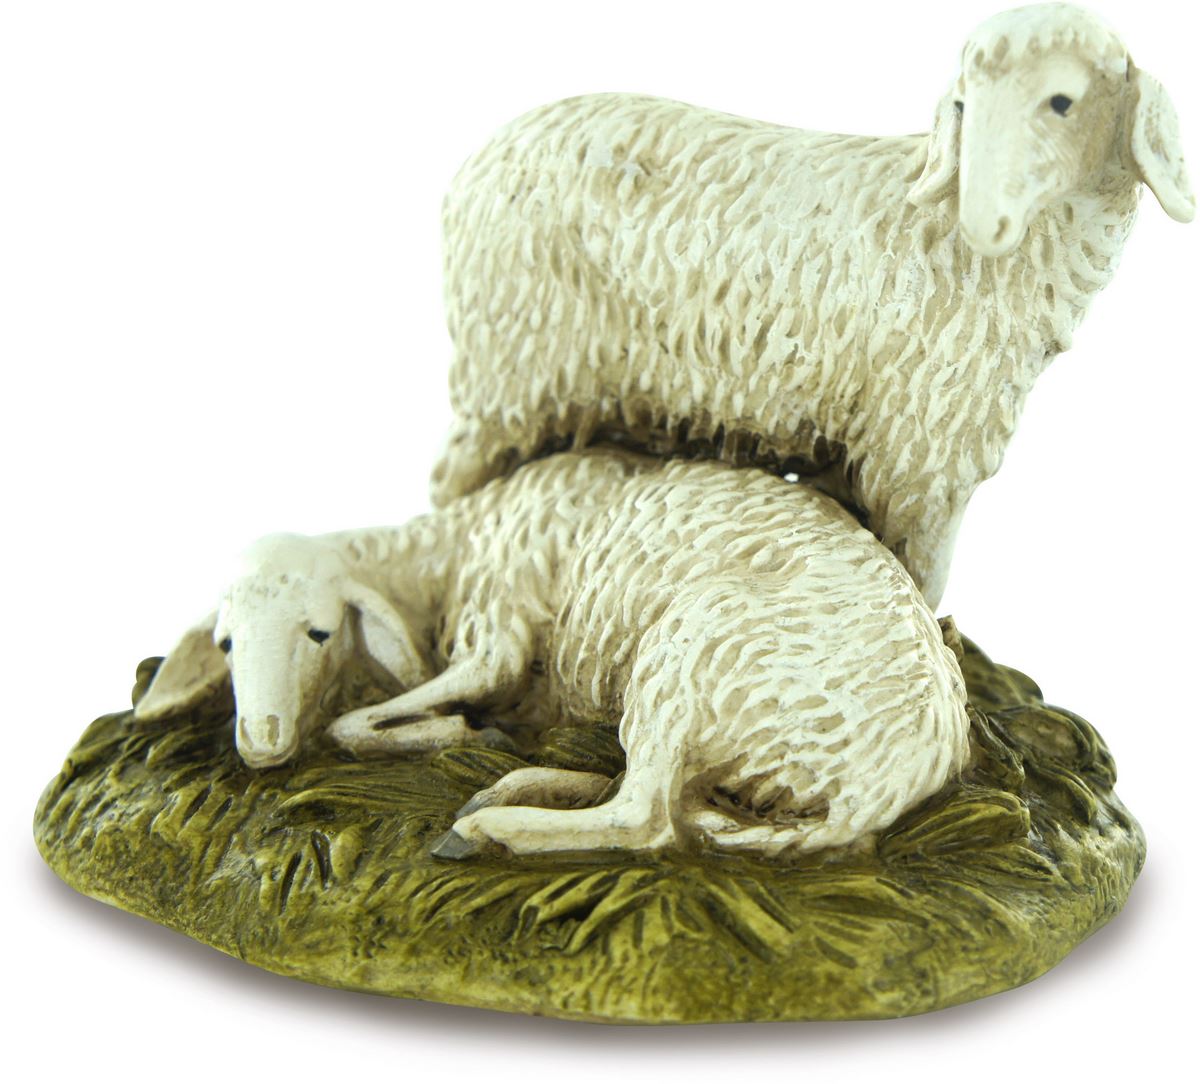 ferrari & arrighetti statuine presepe, statuina gruppo di 2 pecore per presepe da 10 cm, statuina per presepe classico / tradizionale stile martino landi, resina dipinta a mano